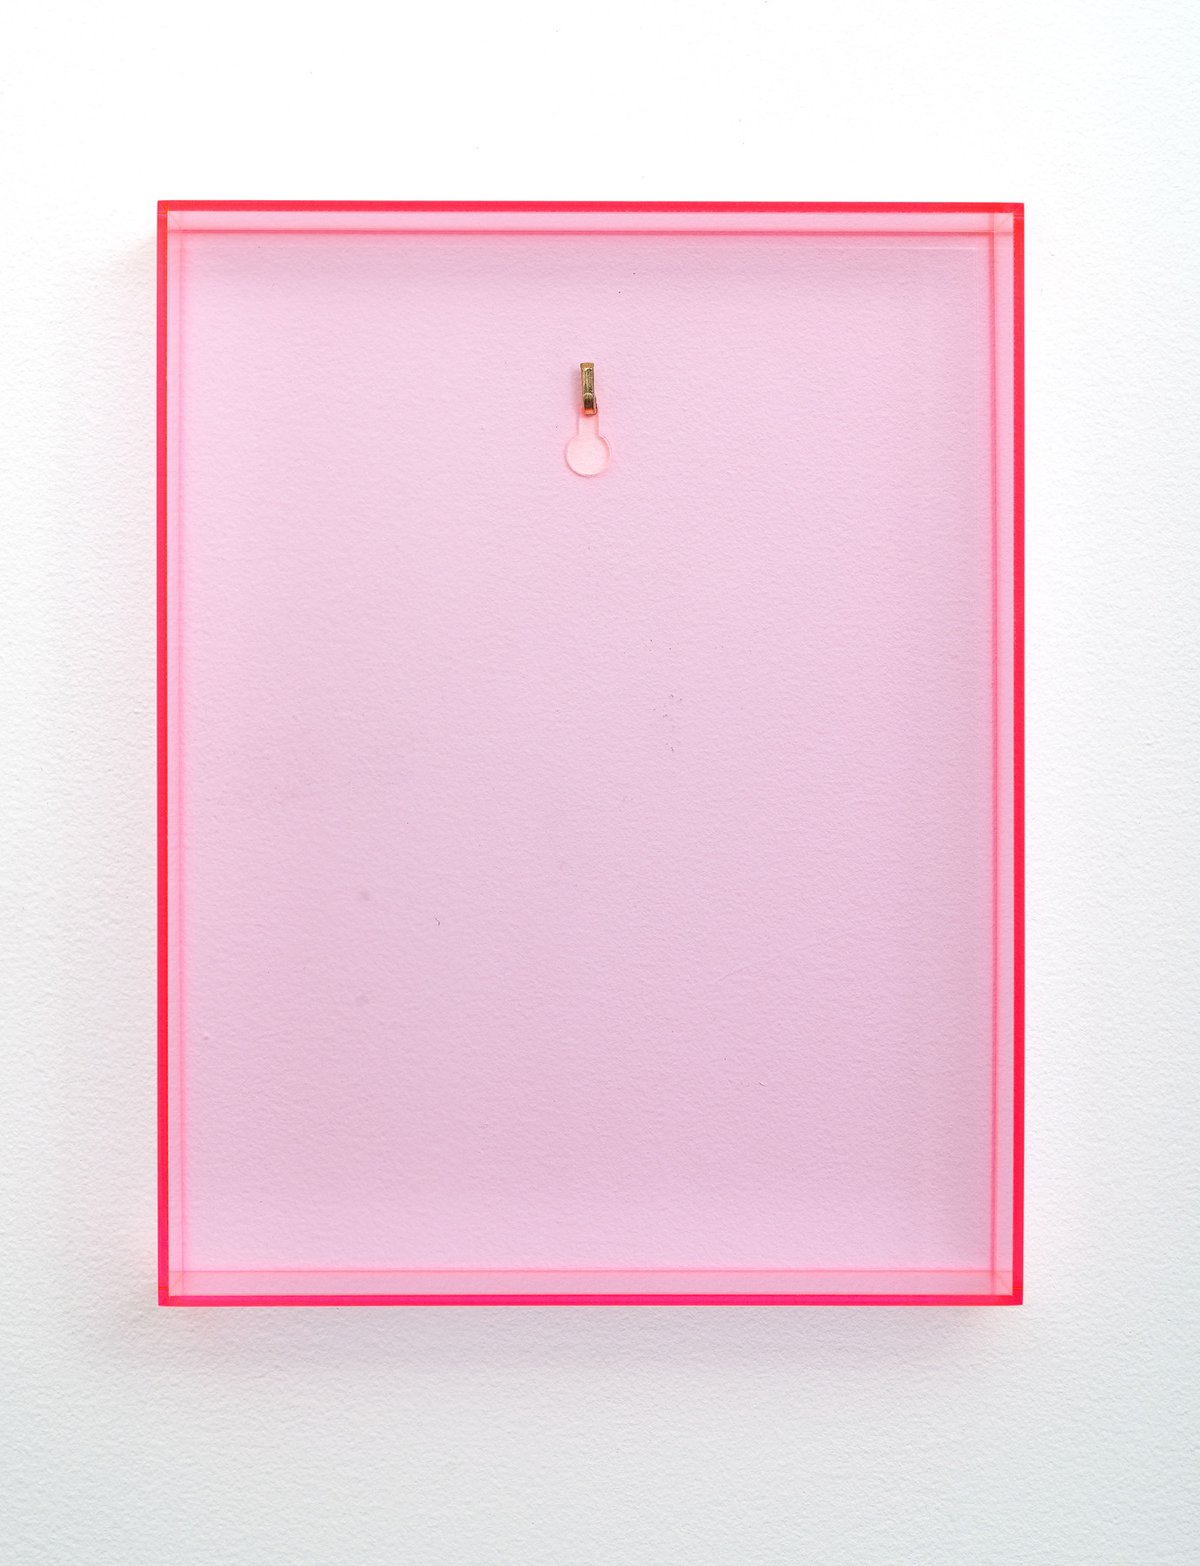 Gerald RockenschaubUntitled, 1991-2018Acrylic glass, brass hook32 x 25 x 7 cm